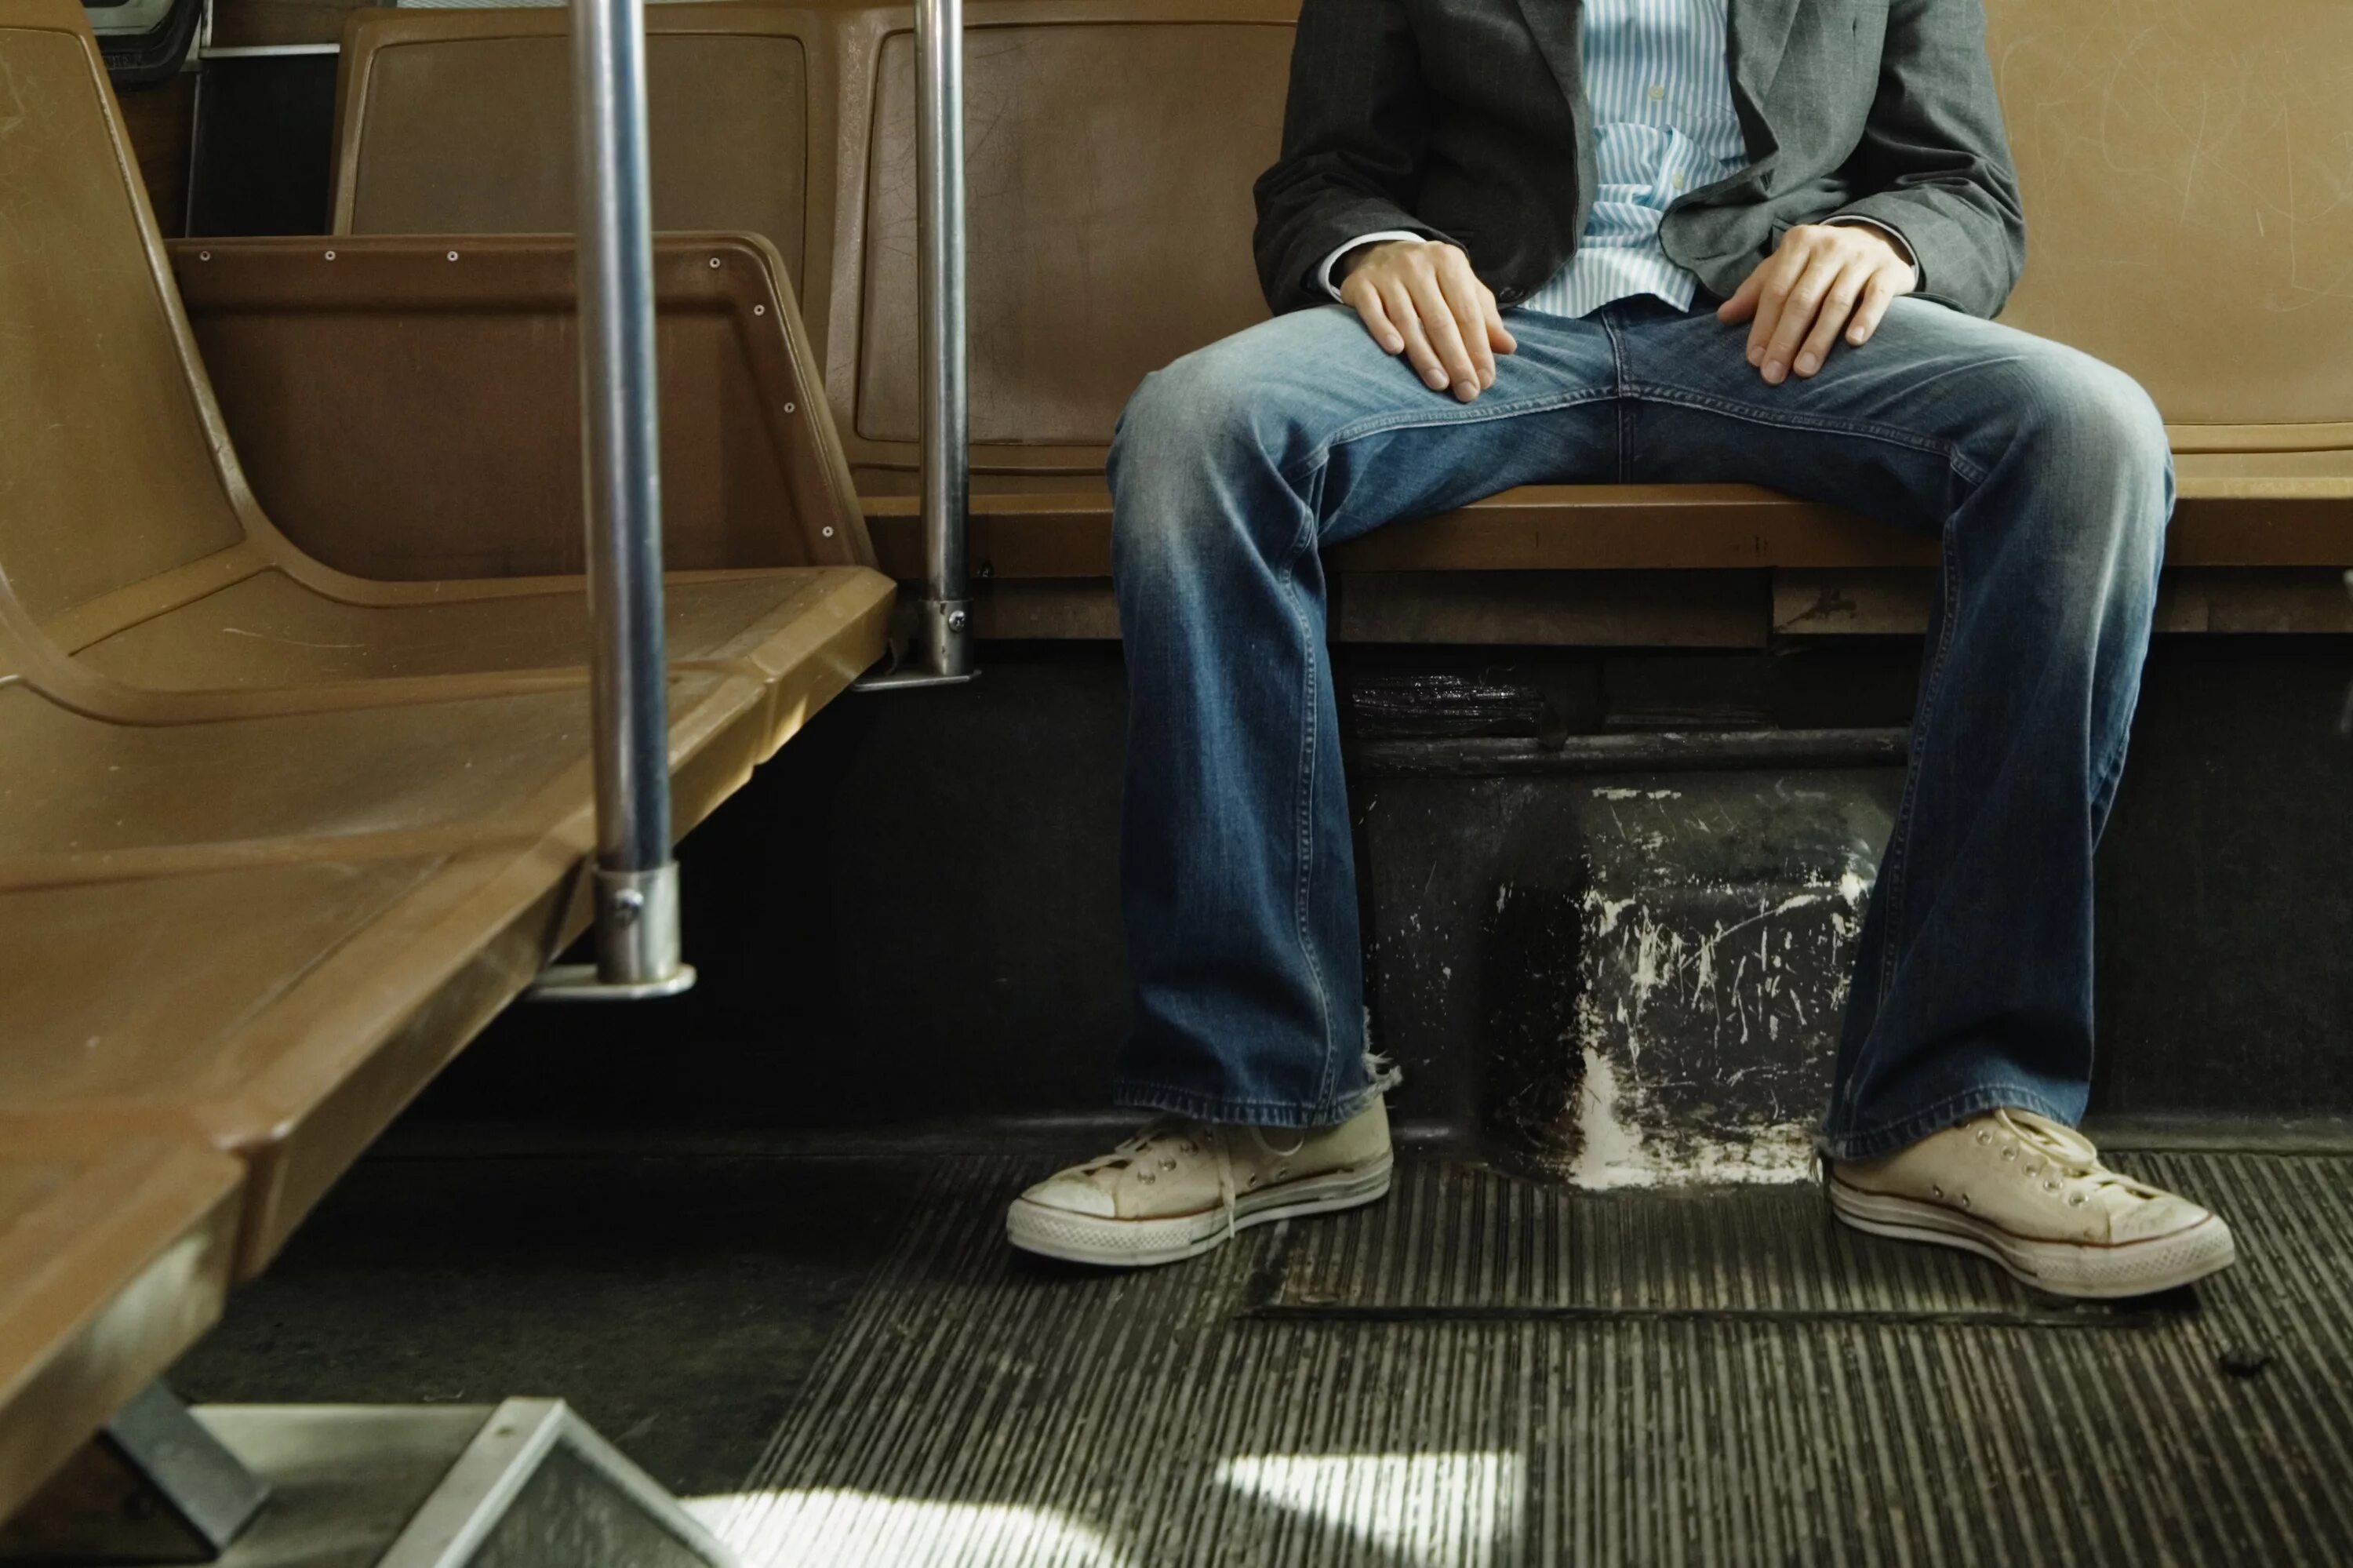 Sided v. Мэнспрединг manspreading. Мэнспрединг в Нью-Йорке. Мужчина сидит с расставленными ногами. Сидит широко расставив ноги.